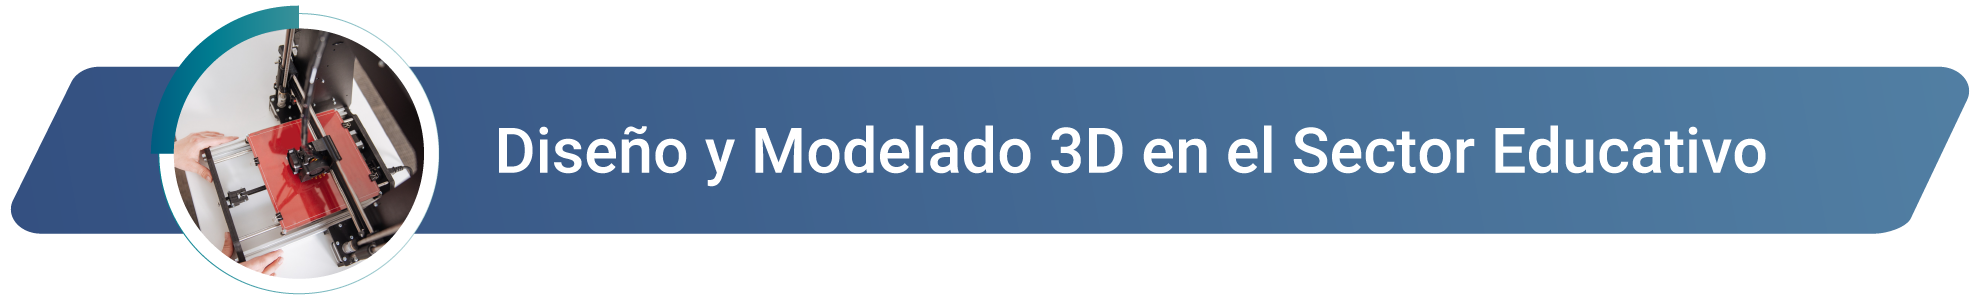 Diseño y Modelado 3D en el Sector Educativo